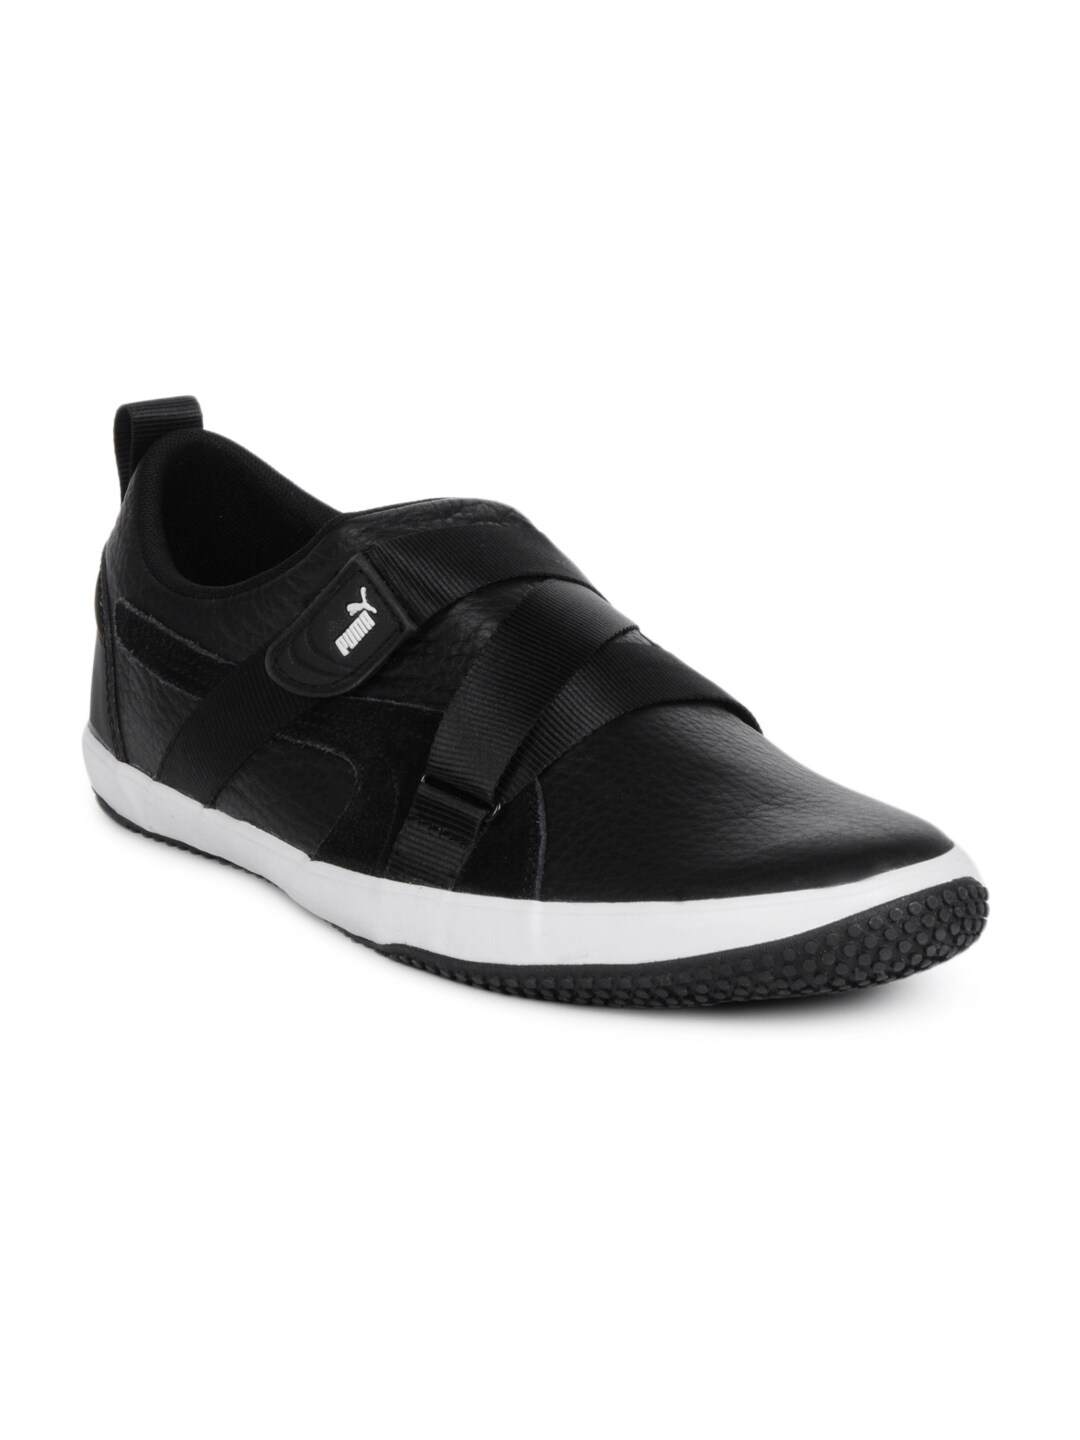 Puma Men Metamostro Black Shoes